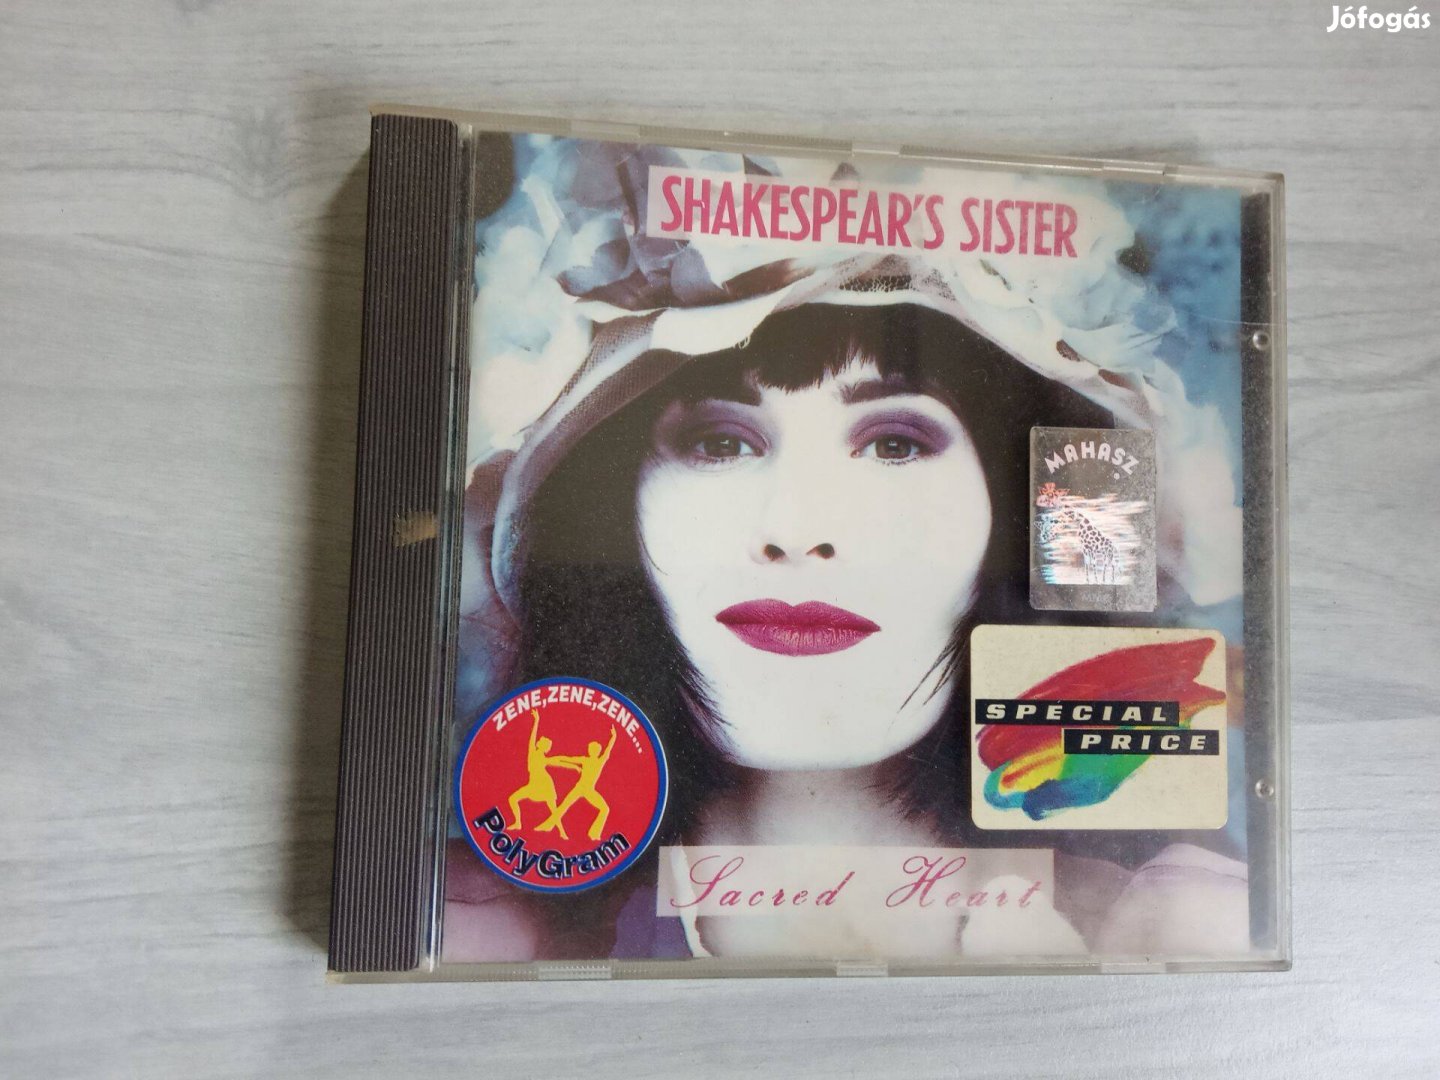 Shakespear's Sister 1989 Sacred Heart cd lemez